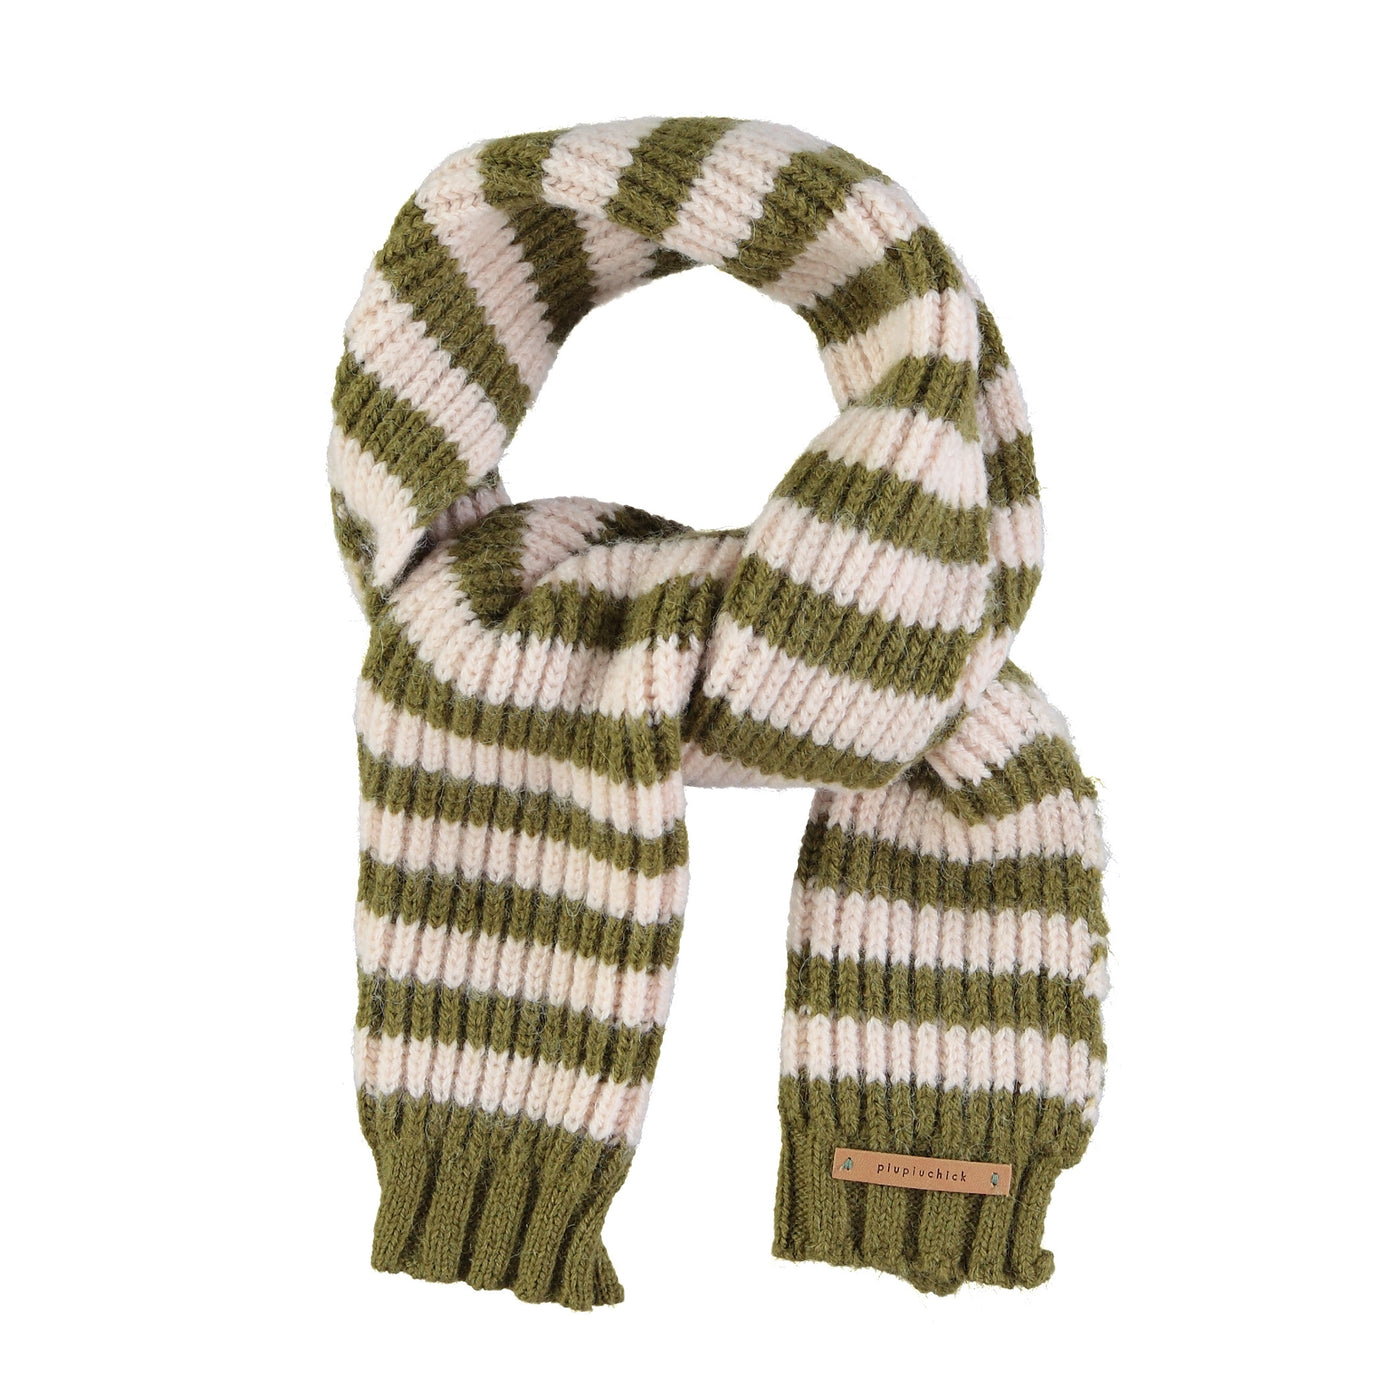 Piupiuchick - Knitted scarf green & ecru stripes